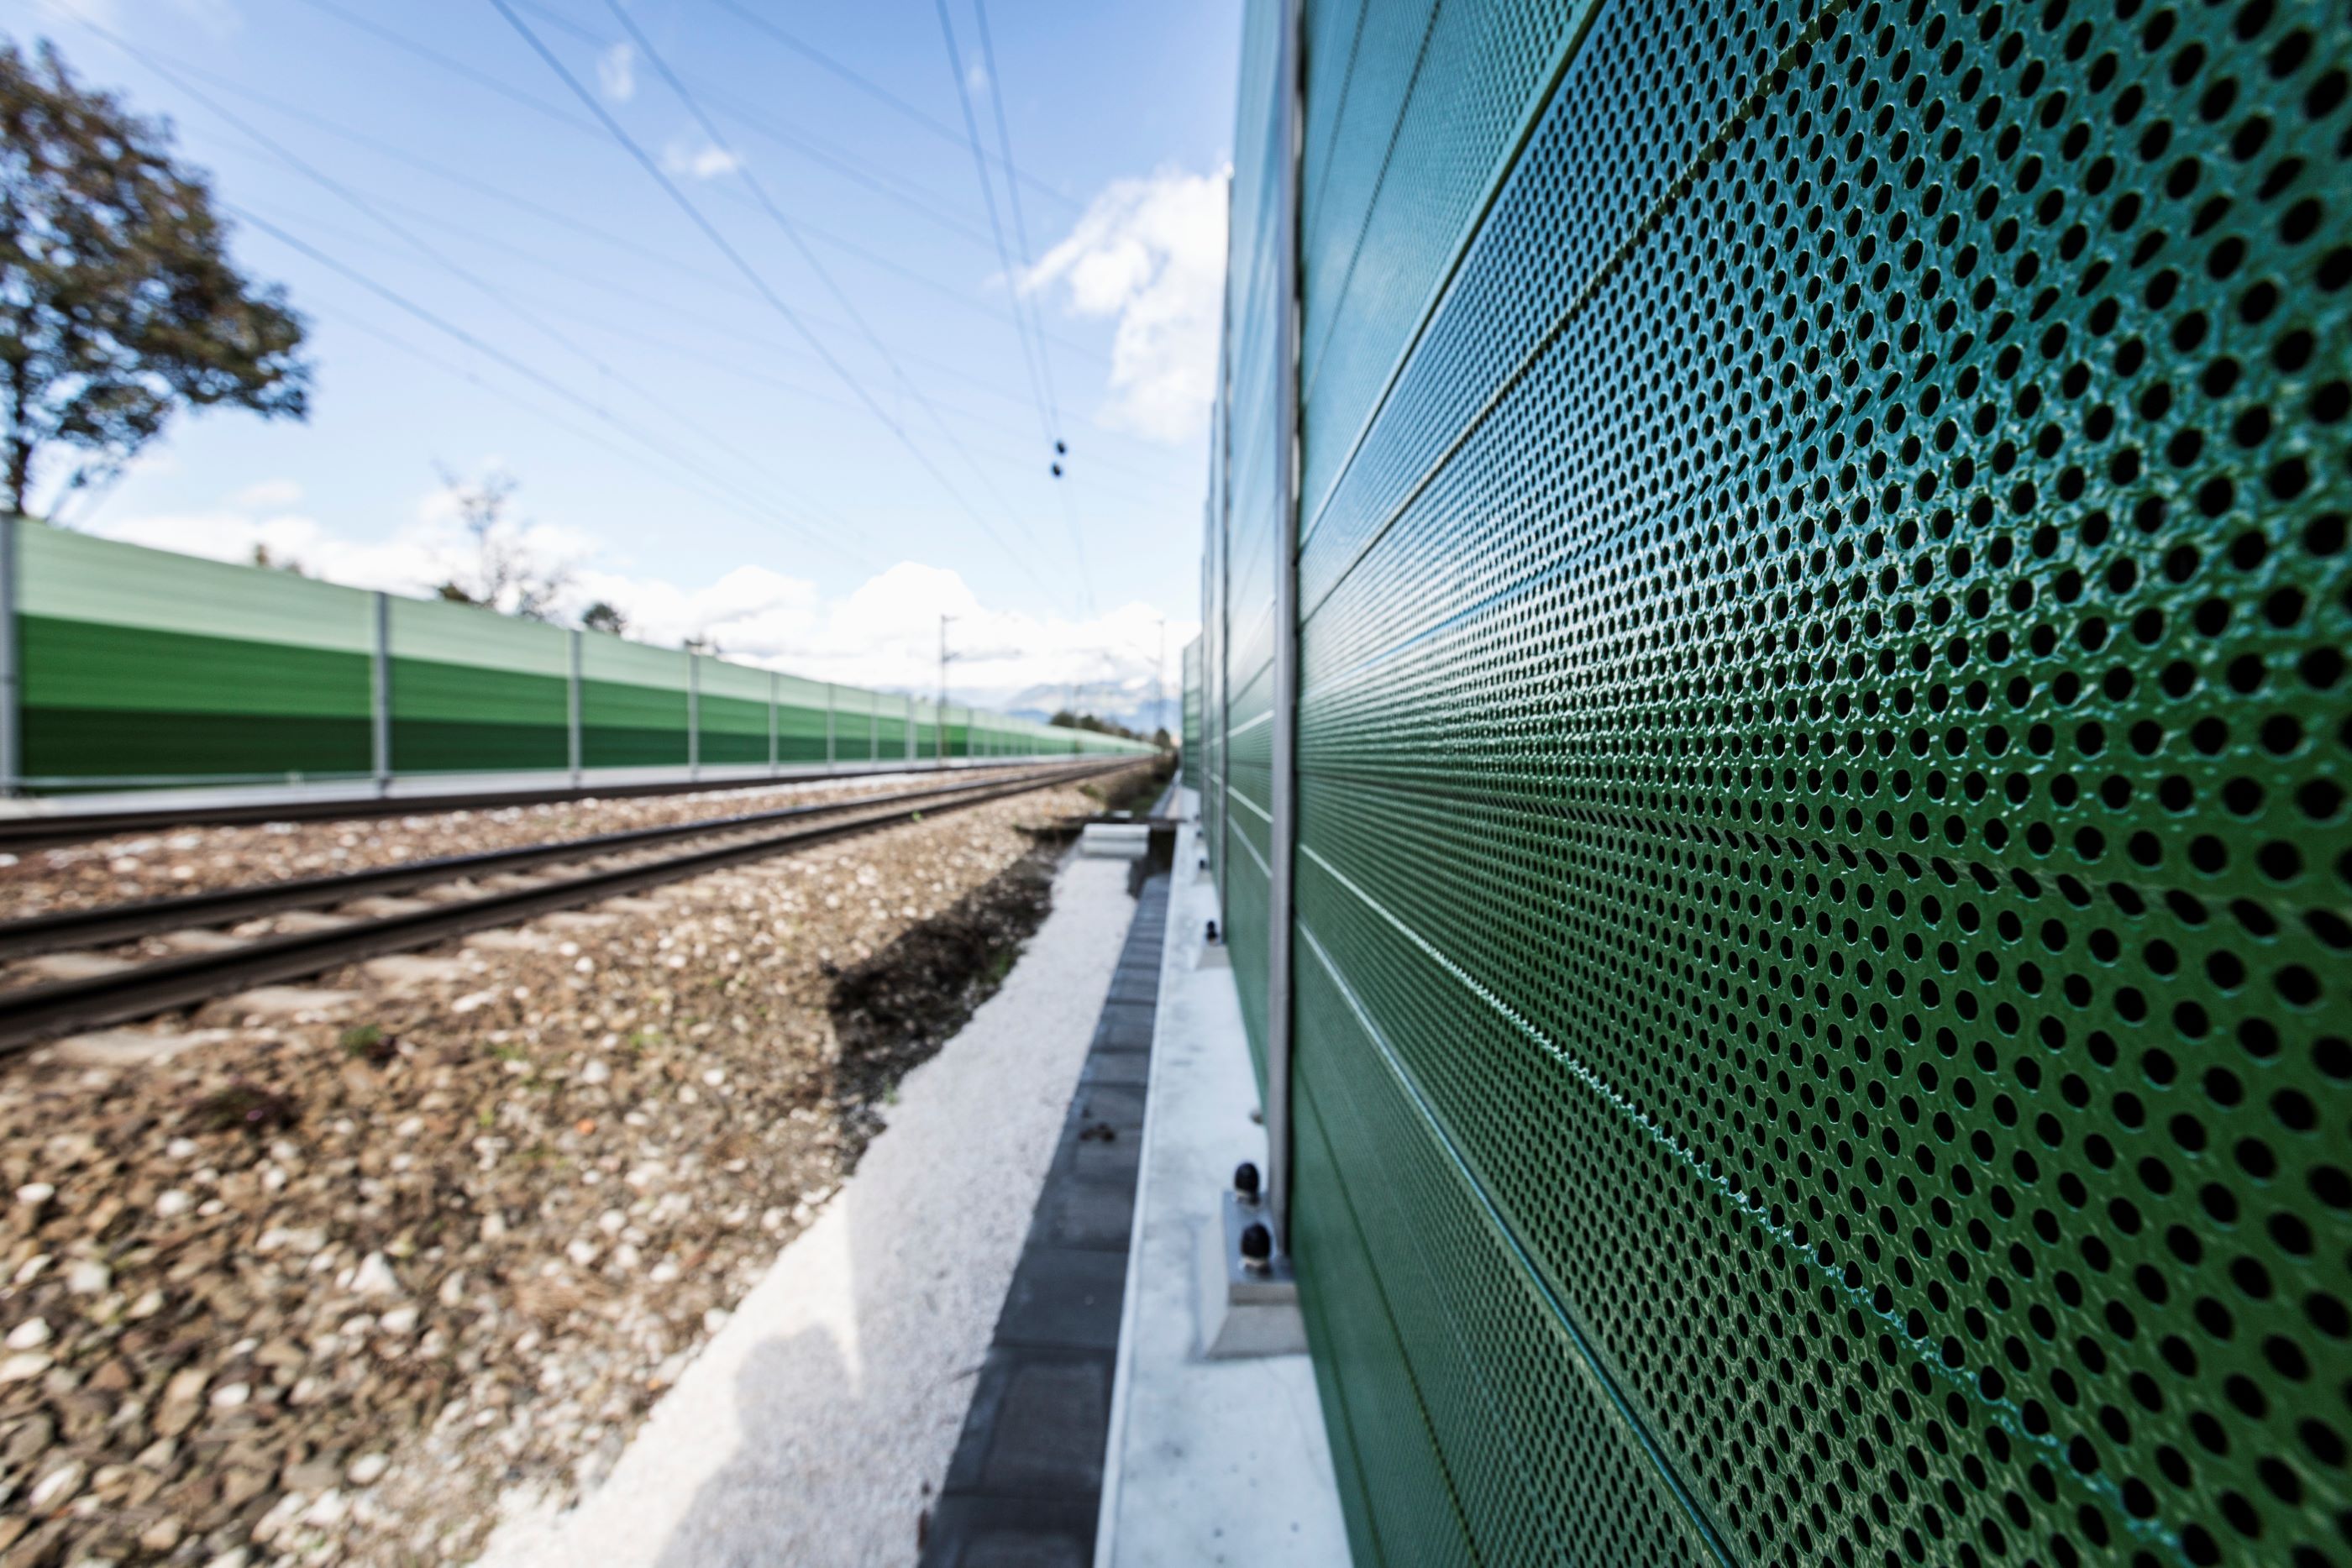 <p>Im Zuge des Ausbaus der Linie S 11 wird die Deutsche Bahn auf einer Länge von 3,5 Kilometern neue Schallschutzwände zwischen Bergisch Gladbach und Köln-Dellbrück errichten. Bei Bürgerbeteiligungsveranstaltungen haben Anwohnende den Wunsch geäußert, an der Gestaltung dieser Wände beteiligt zu werden. Dieses Versprechen hat die Deutsche Bahn eingelöst und unmittelbar Anwohnende nach ihren Vorstellungen zum Schallschutz gefragt.</p>